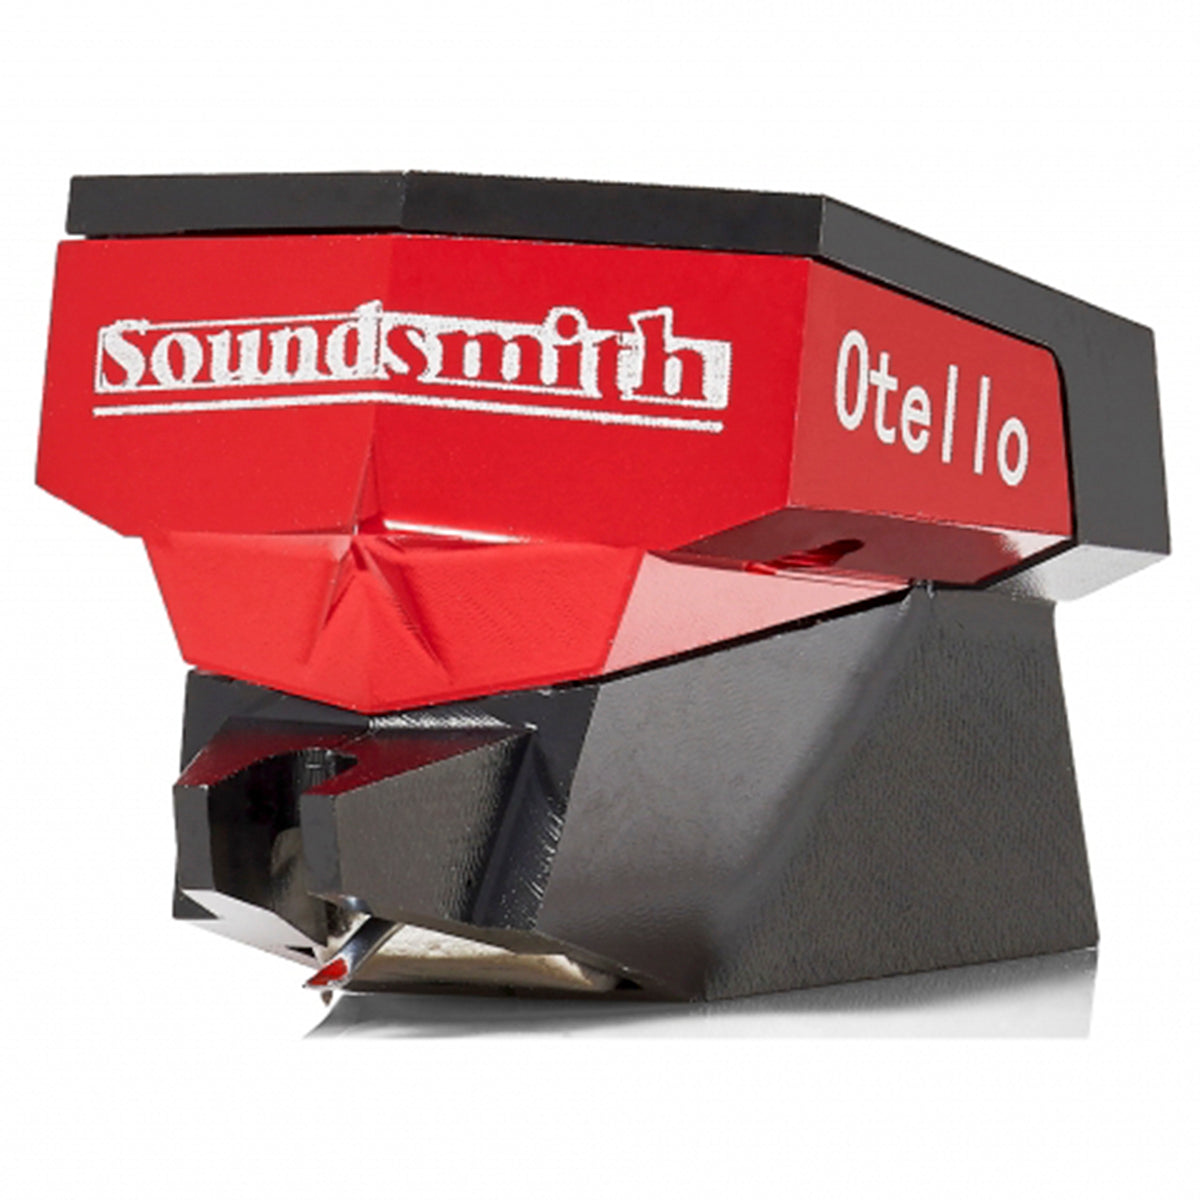 Soundsmith Otello Moving Iron Cartridge